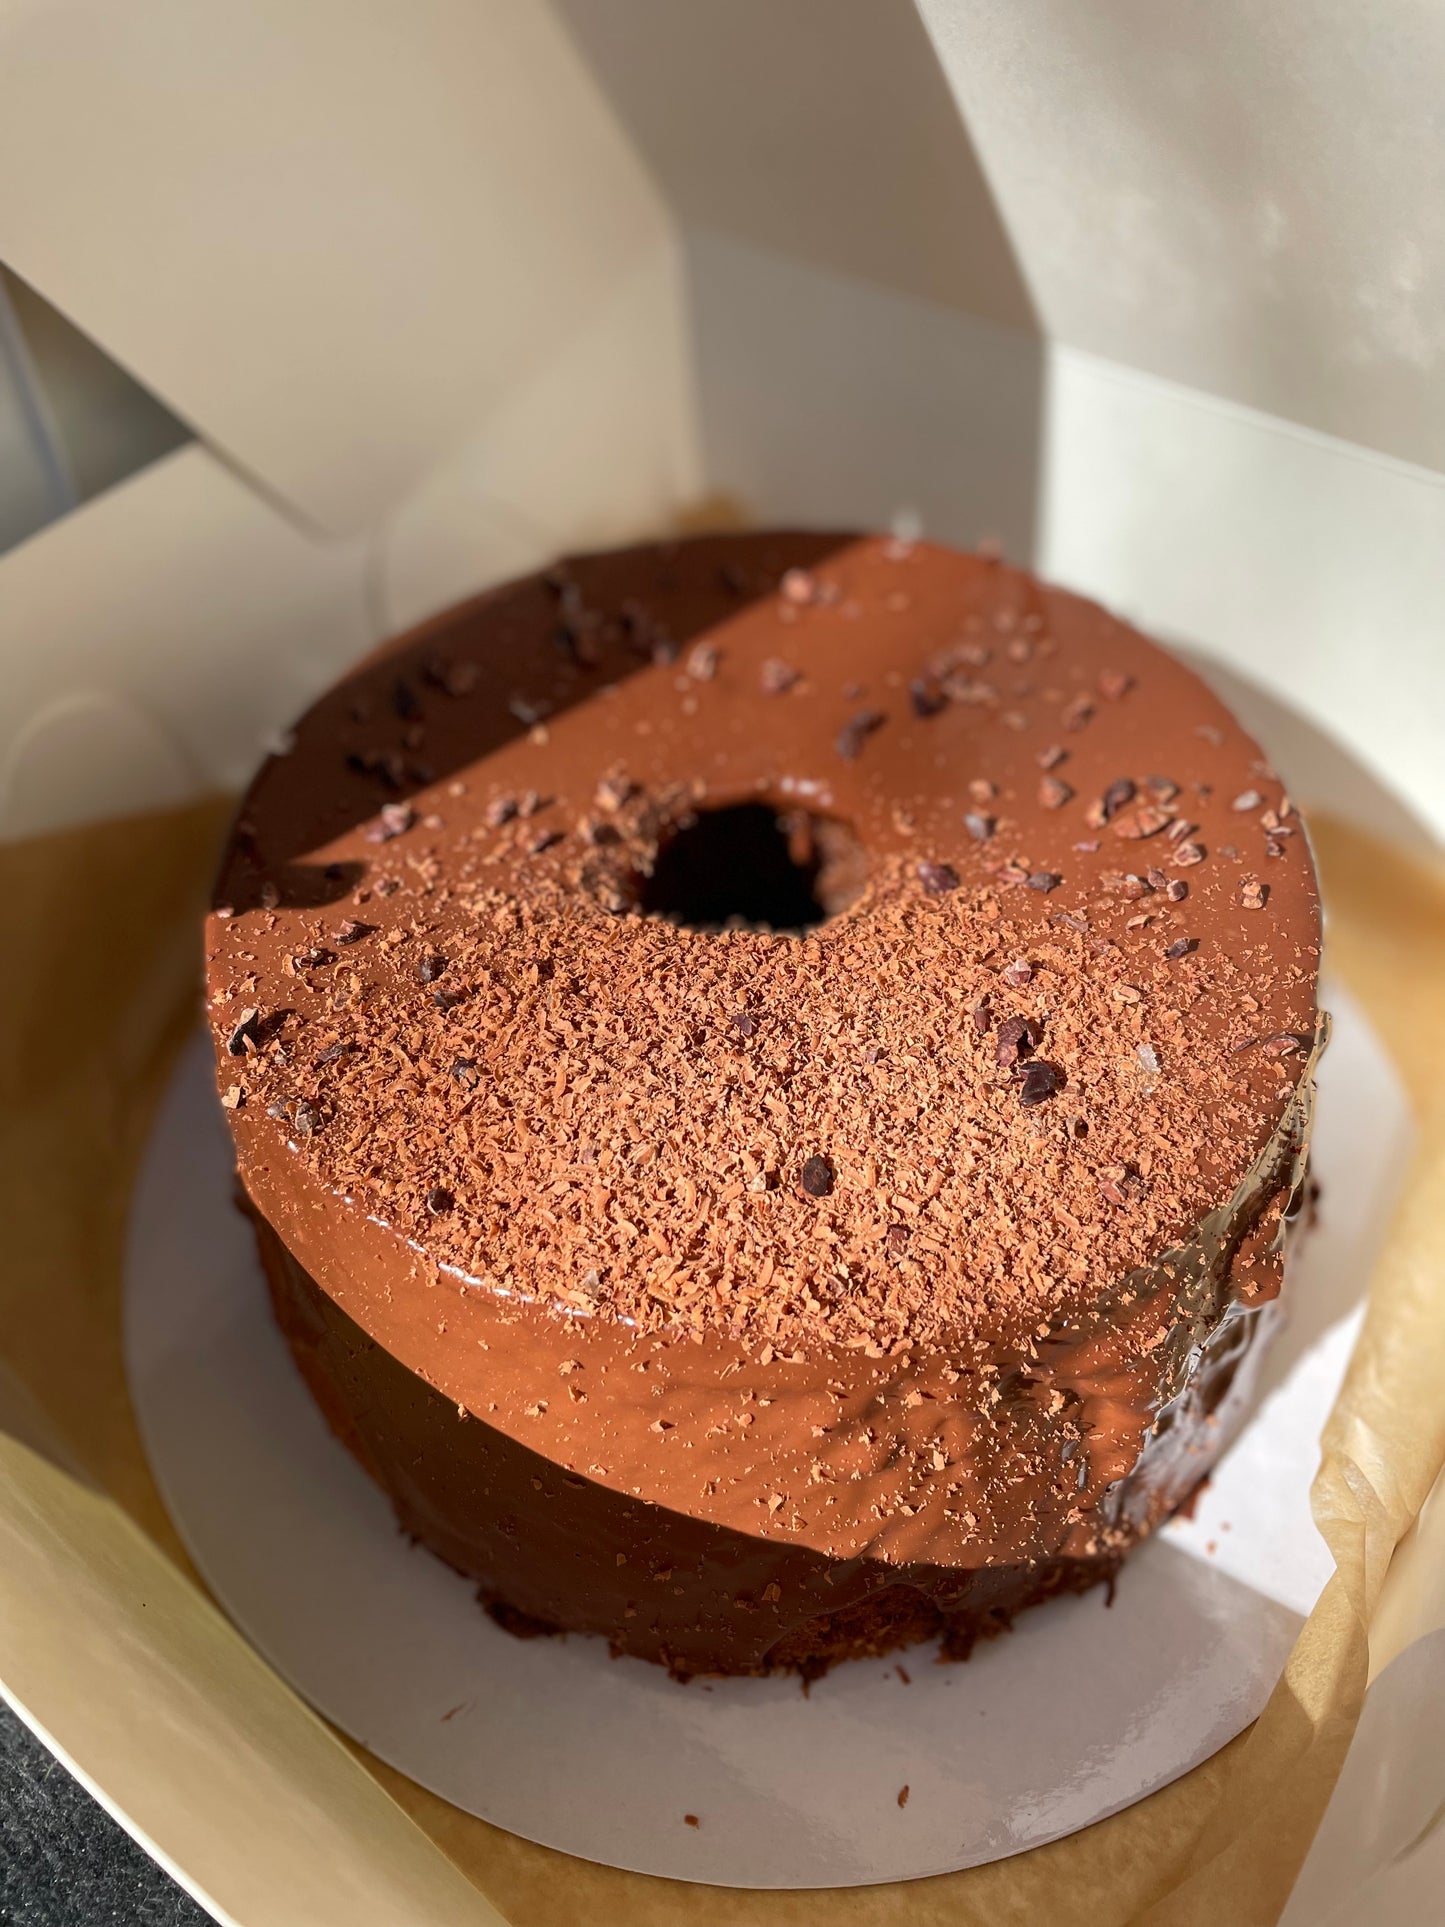 Chocolate espresso chiffon cake, hazelnut ganache